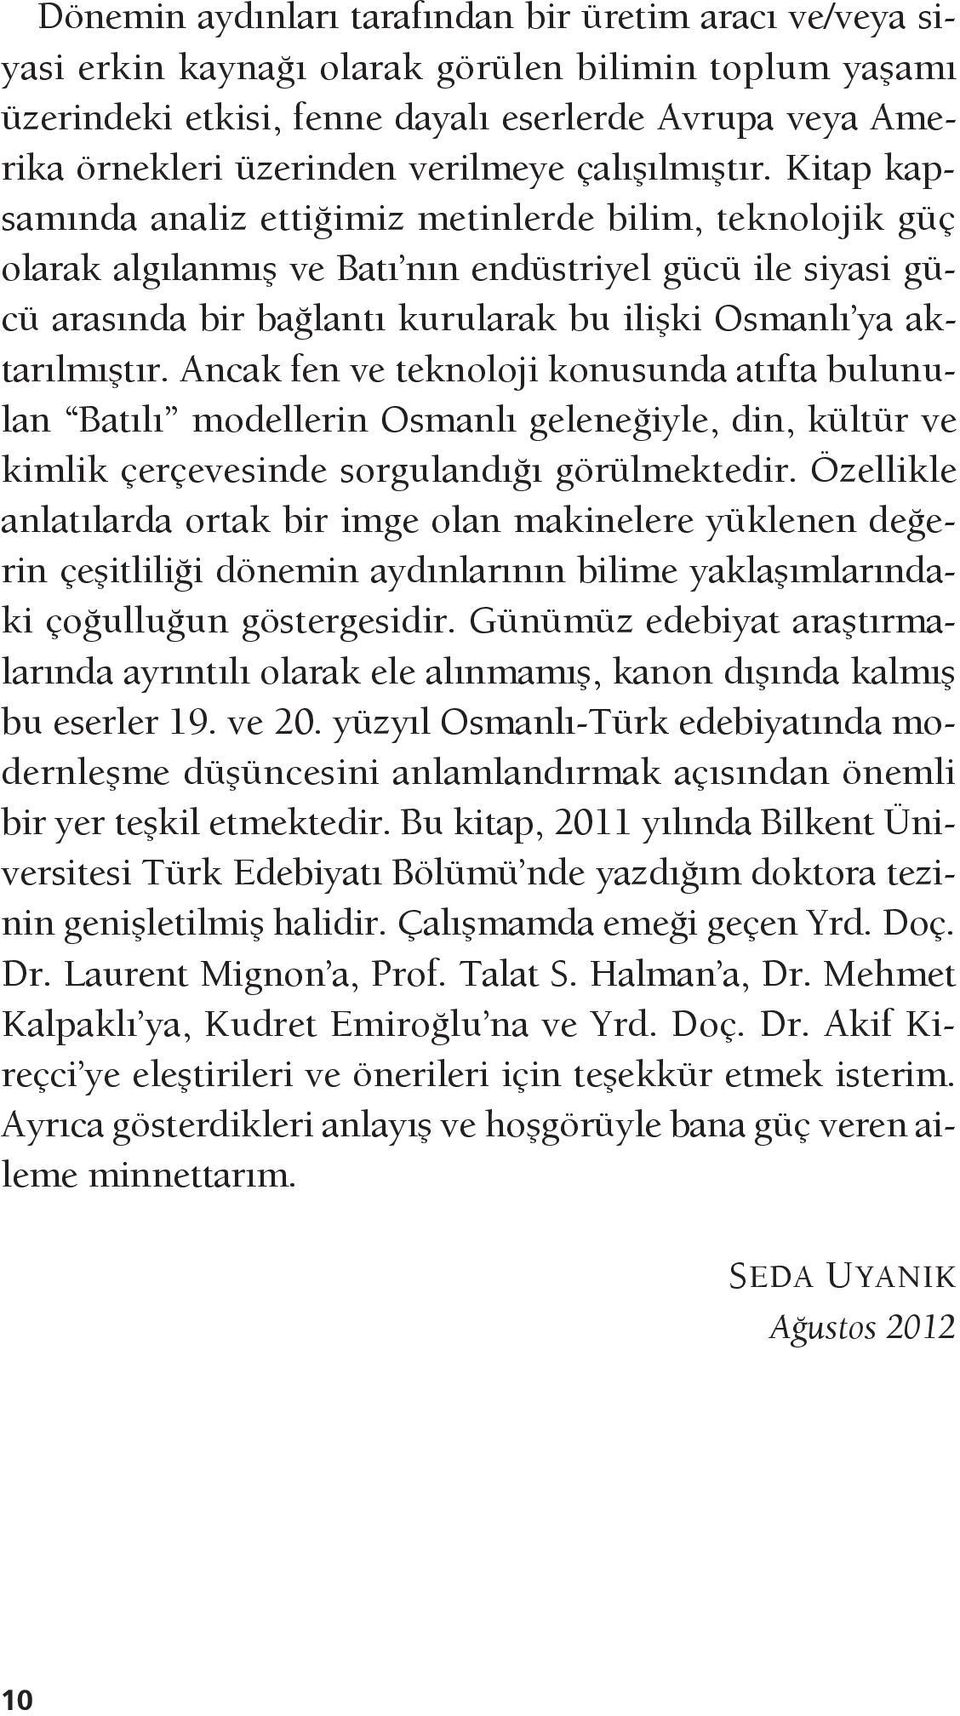 Kitap kapsamında analiz ettiğimiz metinlerde bilim, teknolojik güç olarak algılanmış ve Batı nın endüstriyel gücü ile siyasi gücü arasında bir bağlantı kurularak bu ilişki Osmanlı ya aktarılmıştır.